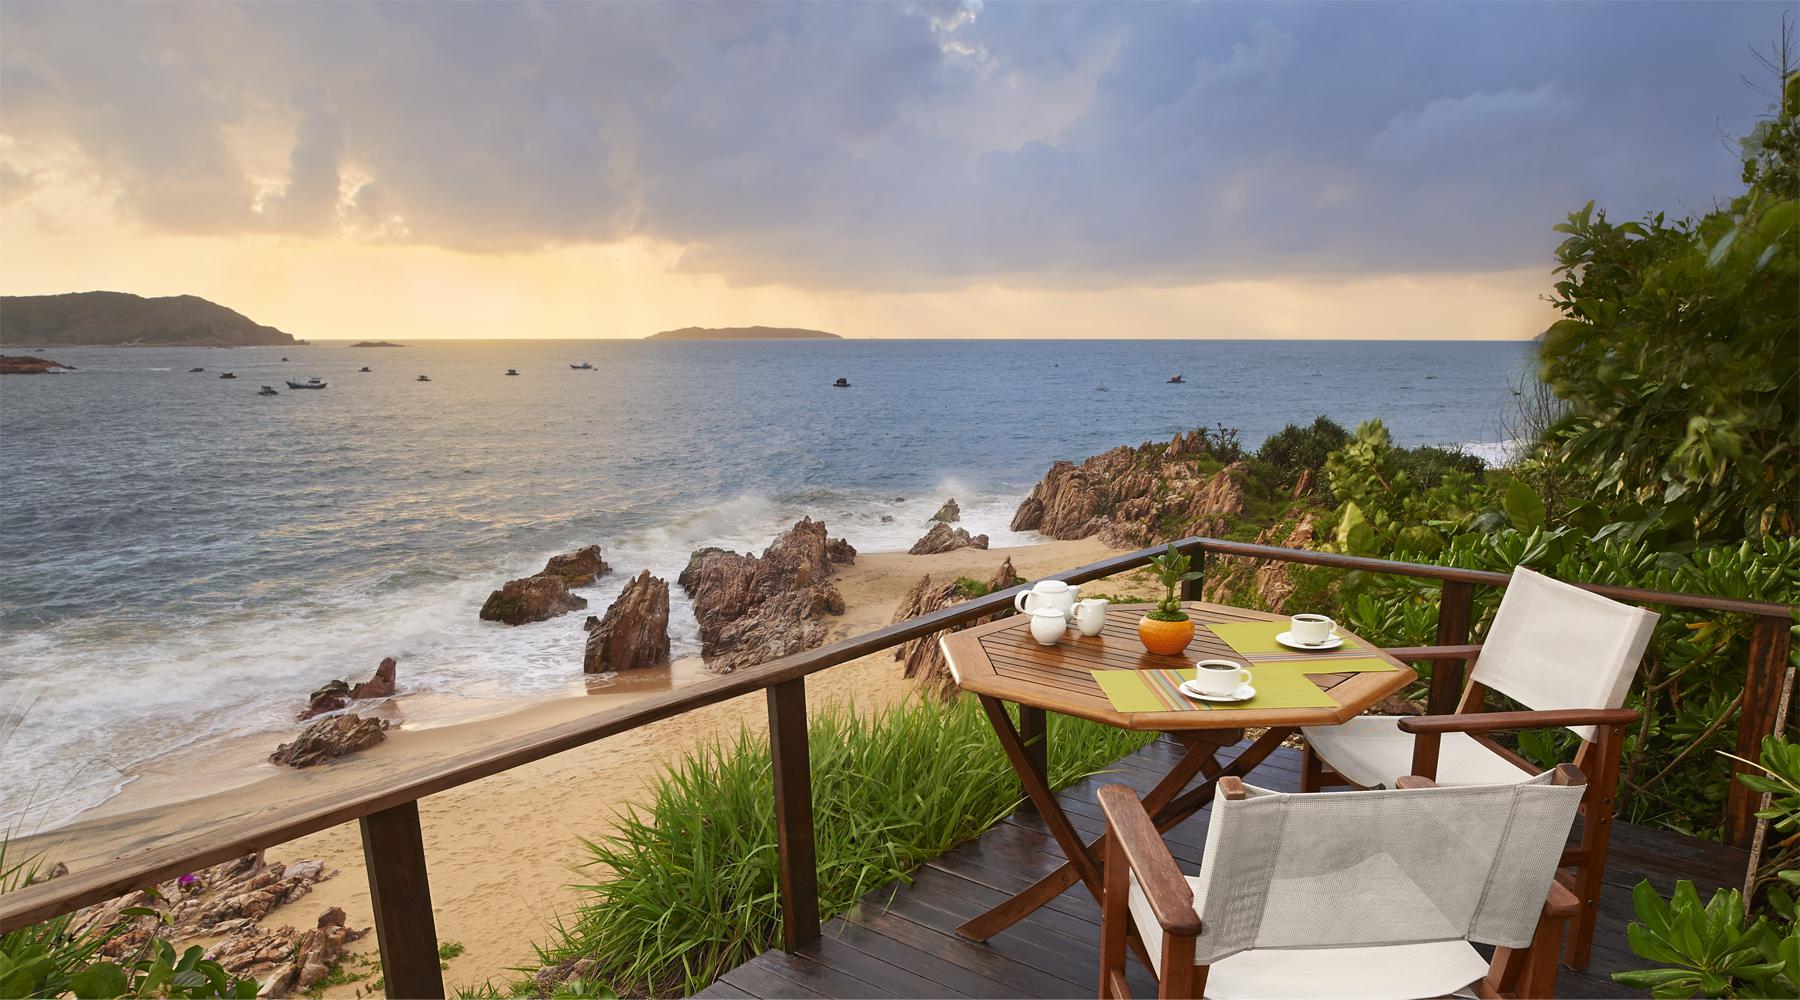 Resort được mệnh danh là “hòn ngọc bí ẩn” của Quy Nhơn, đặc biệt có bể bơi nước mặn lớn nhất Việt Nam - Ảnh 4.